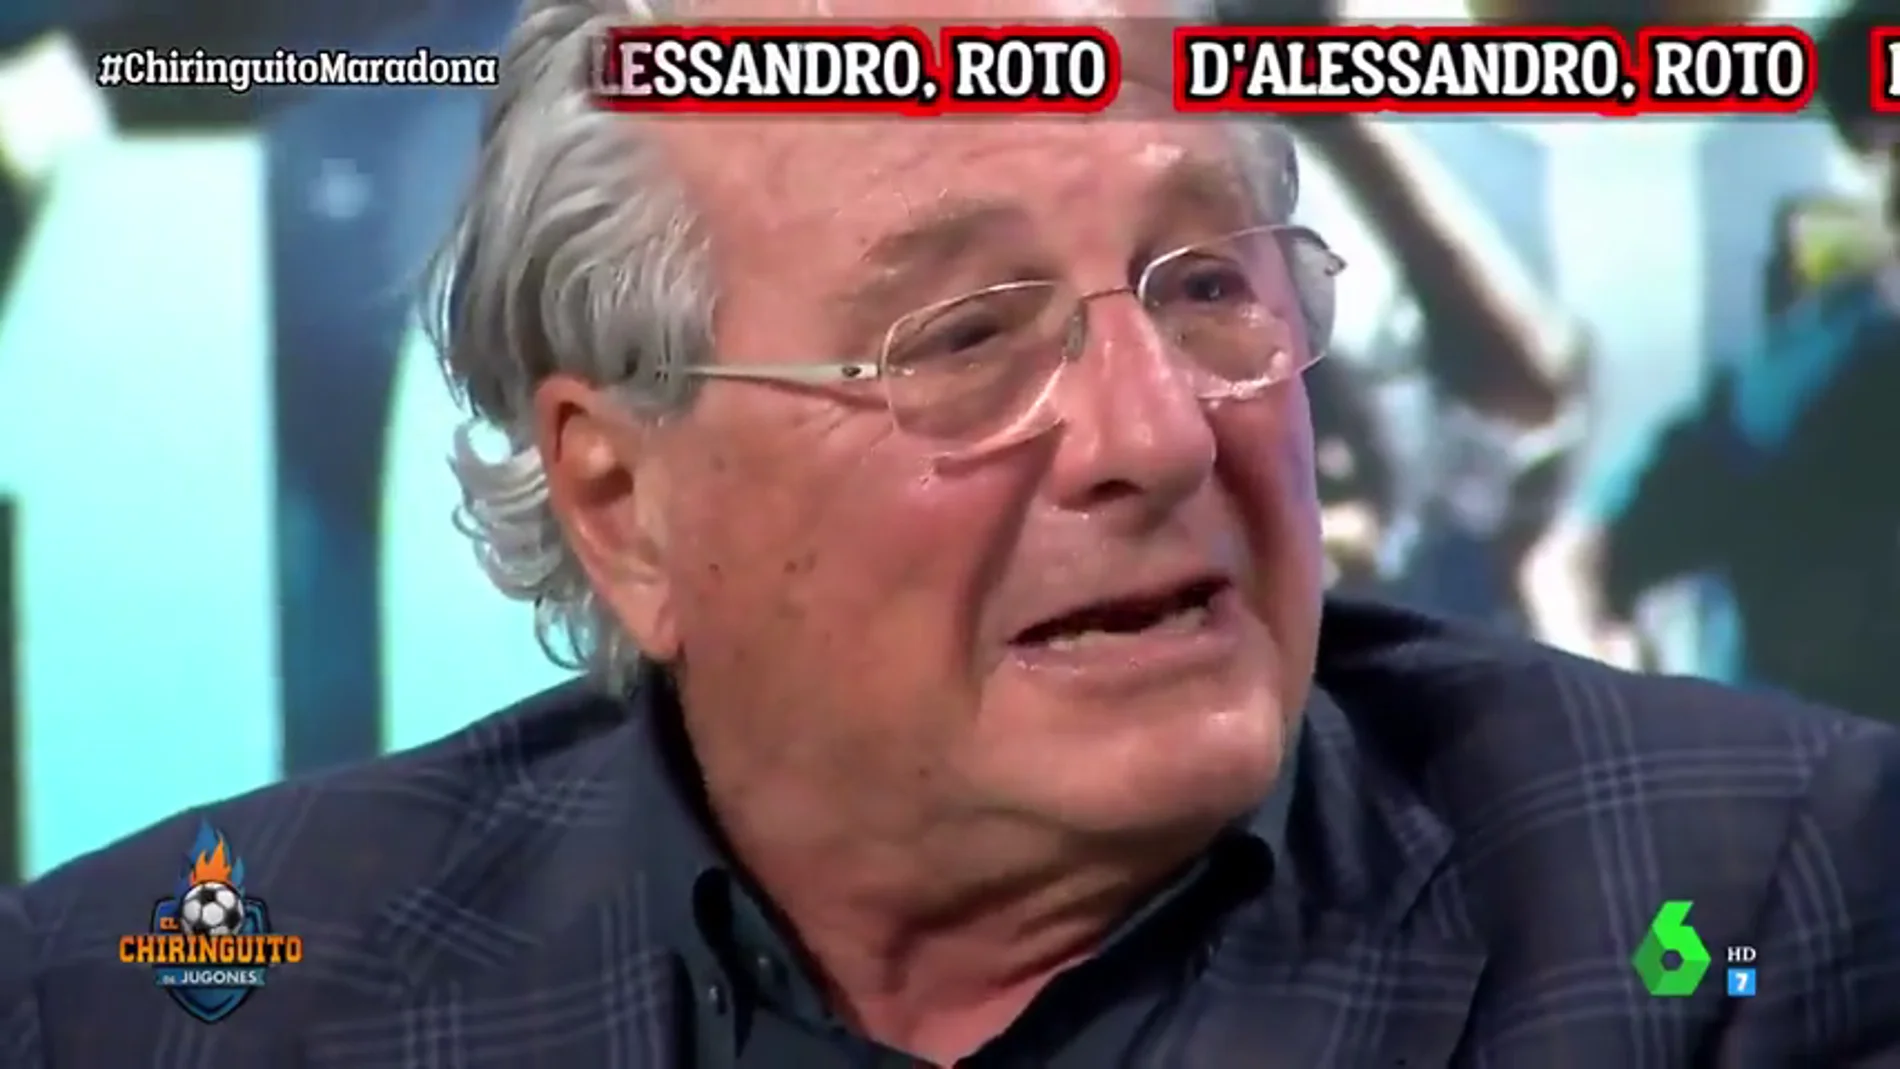 Jorge D'Alessandro rompe a llorar en 'El Chiringuito' por la muerte de Maradona